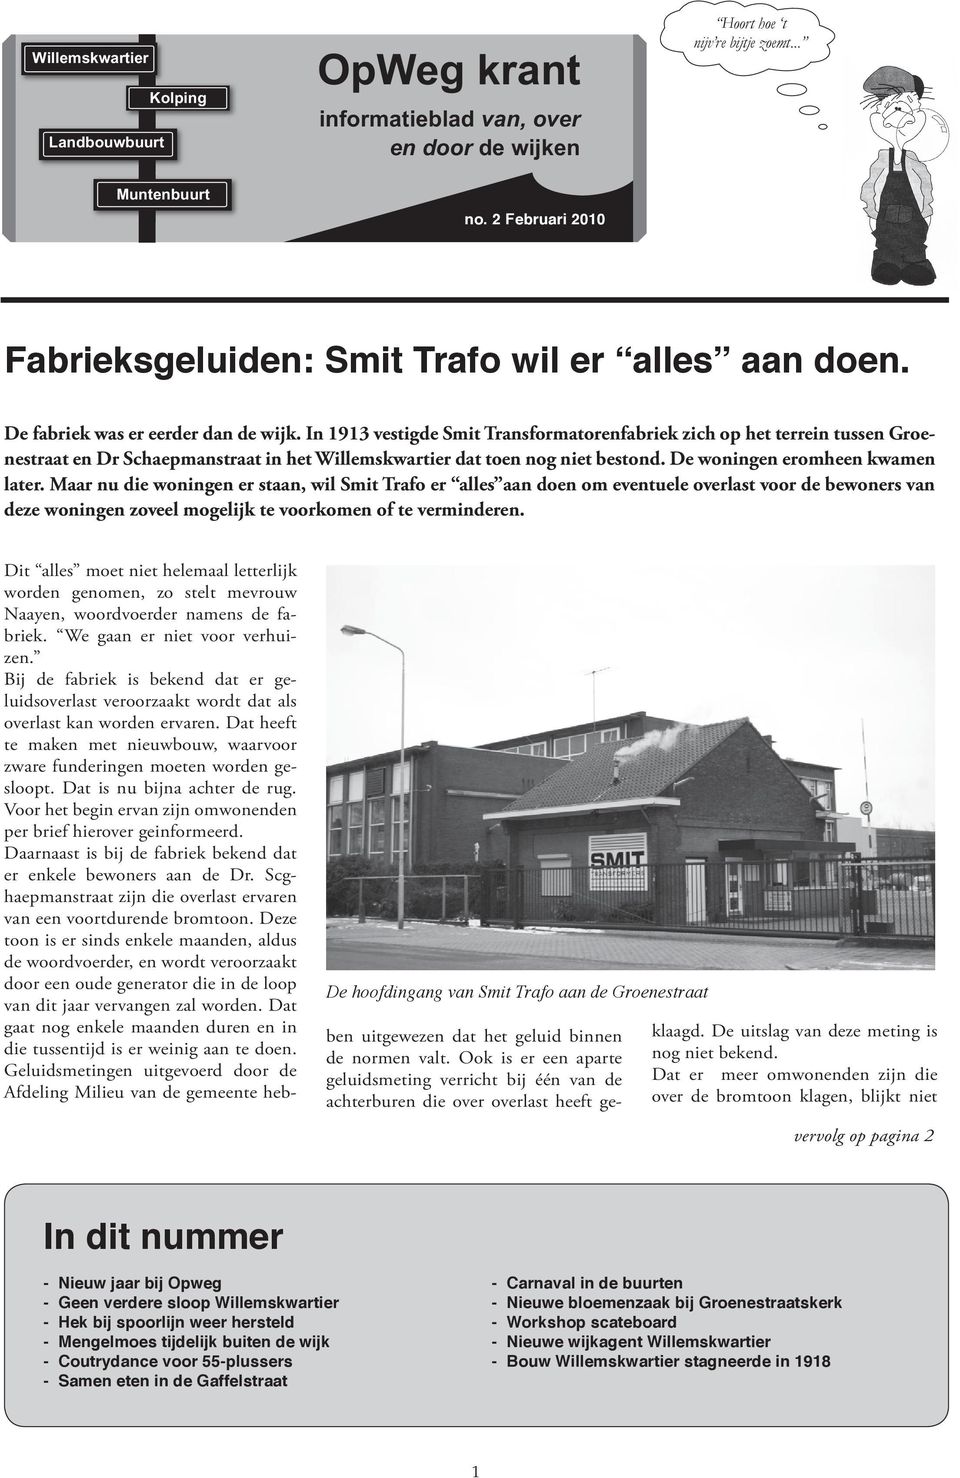 In 1913 vestigde Smit Transformatorenfabriek zich op het terrein tussen Groenestraat en Dr Schaepmanstraat in het Willemskwartier dat toen nog niet bestond. De woningen eromheen kwamen later.